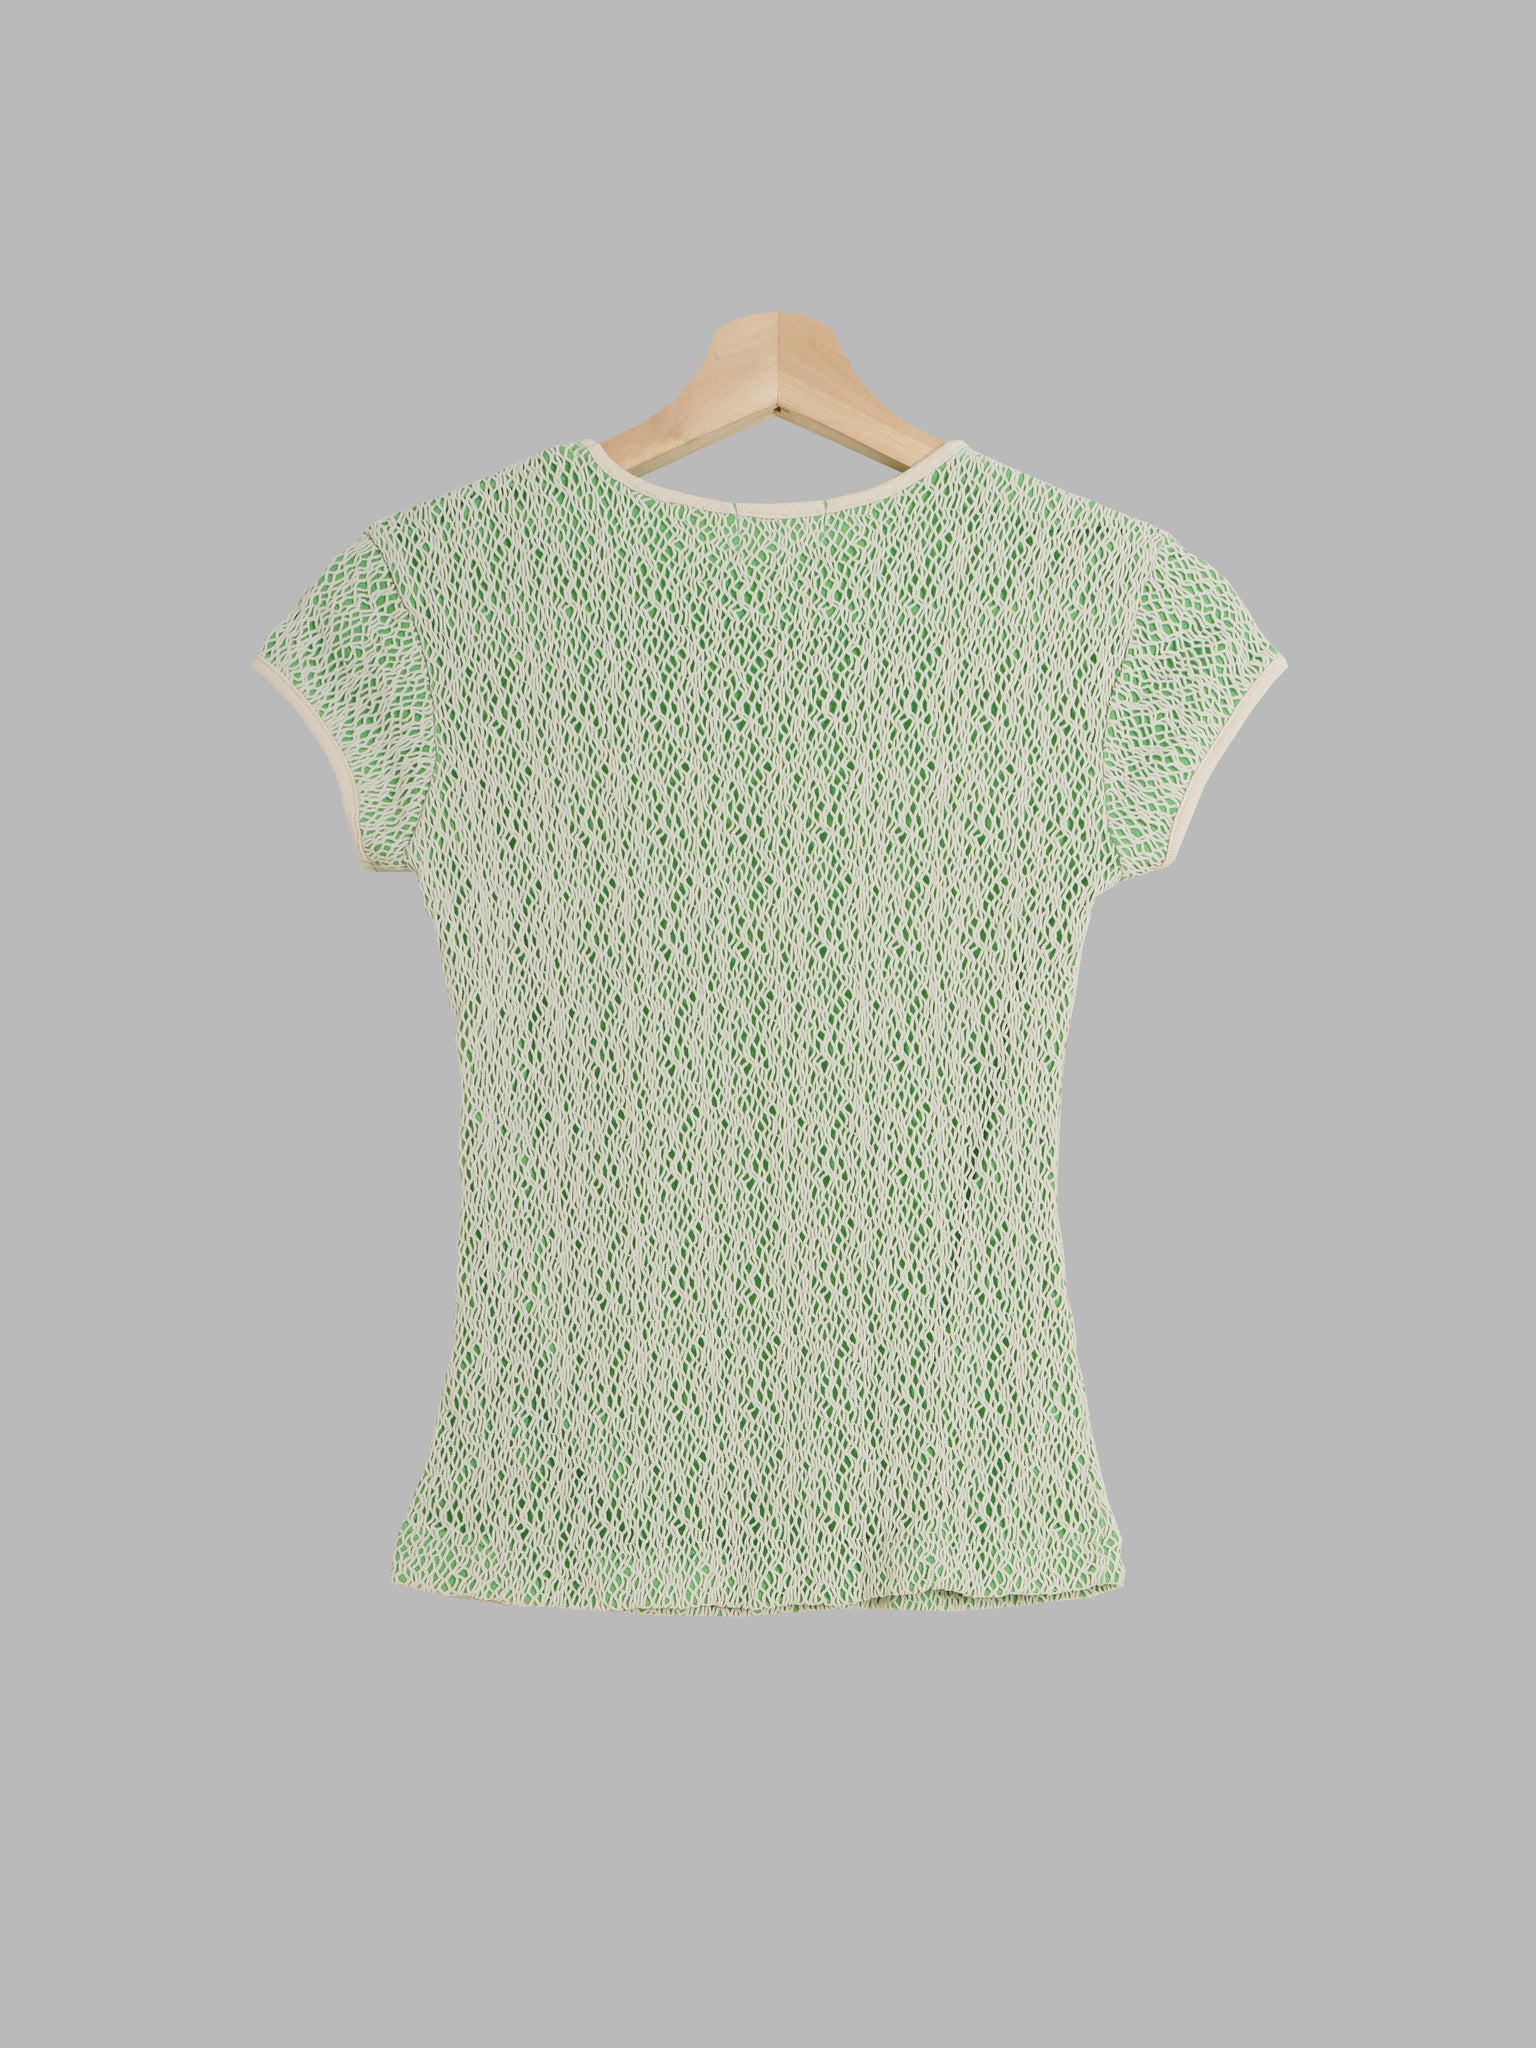 Yoichi Nagasawa beige and green layered netting tshirt - womens XS S